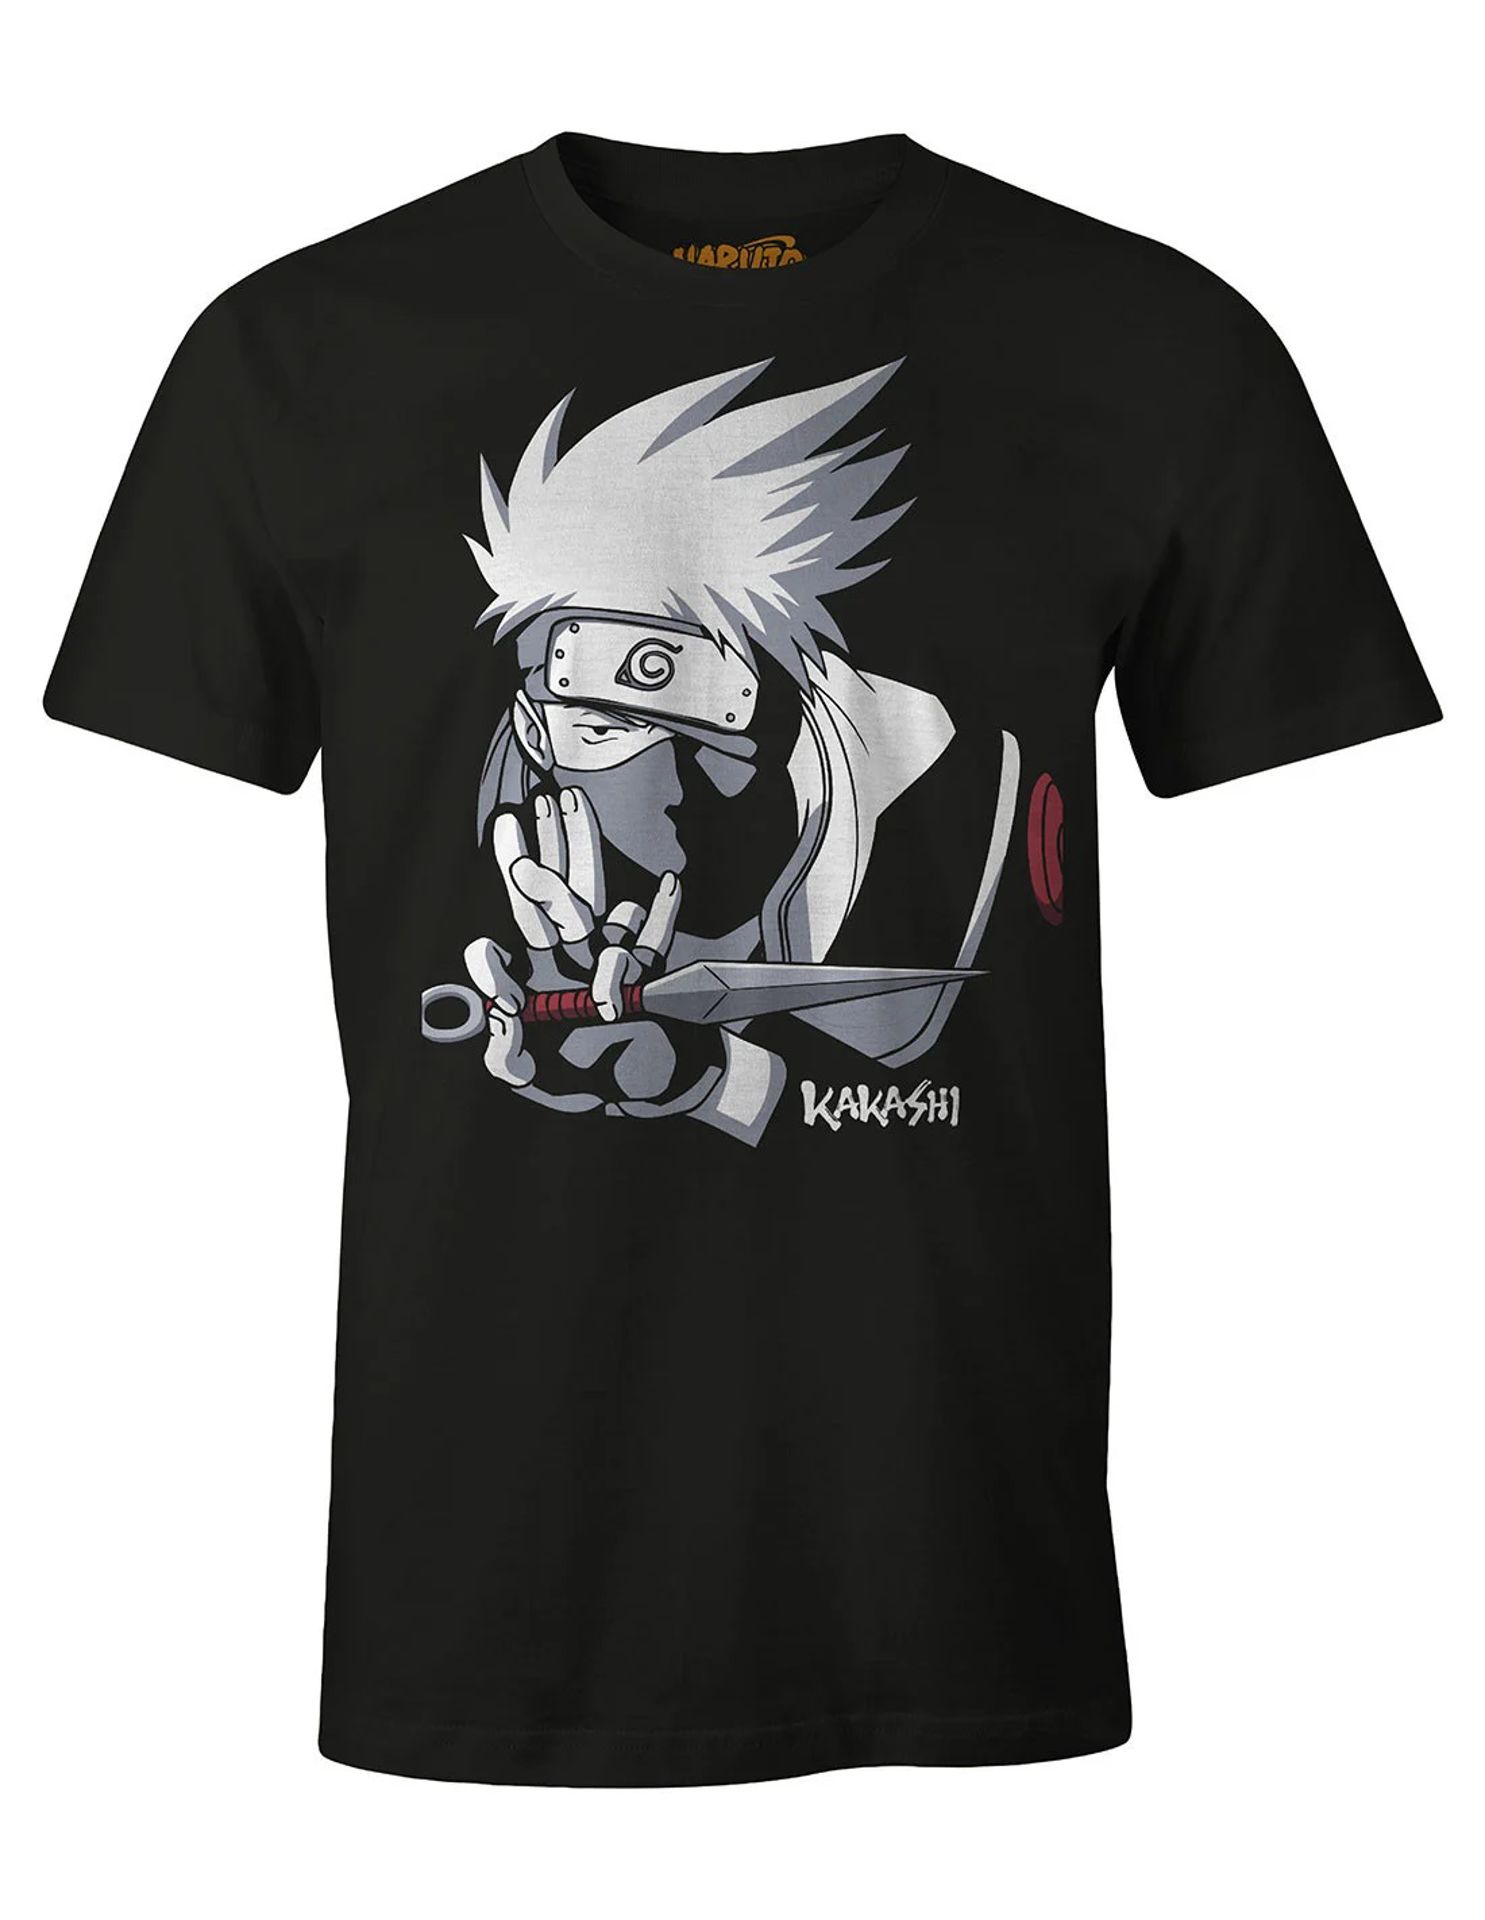 Naruto - T-shirt Noir Kakashi - XL